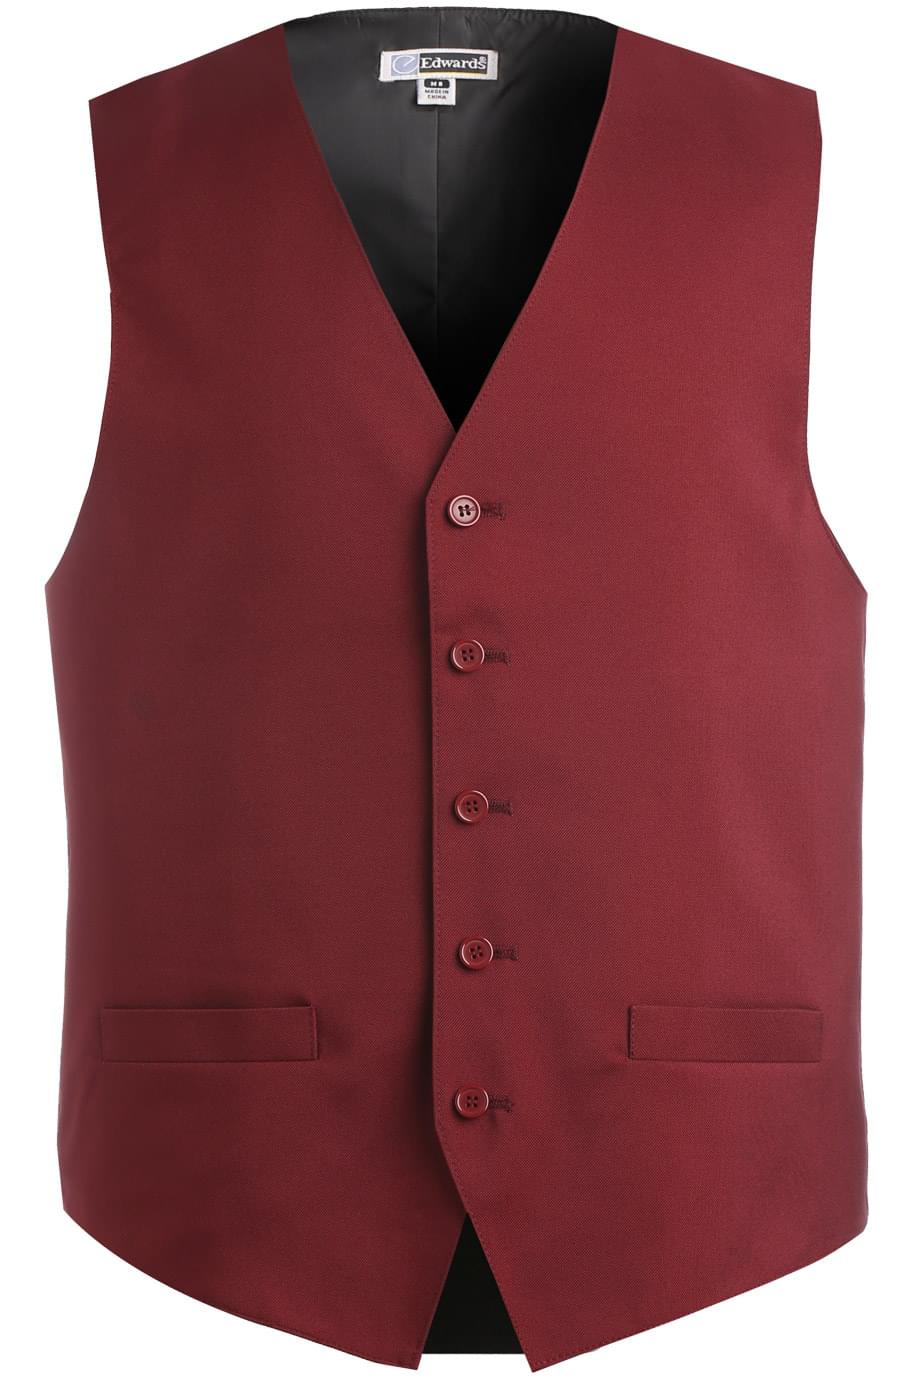 Edwards Men's Burgundy Essential Polyester Vest